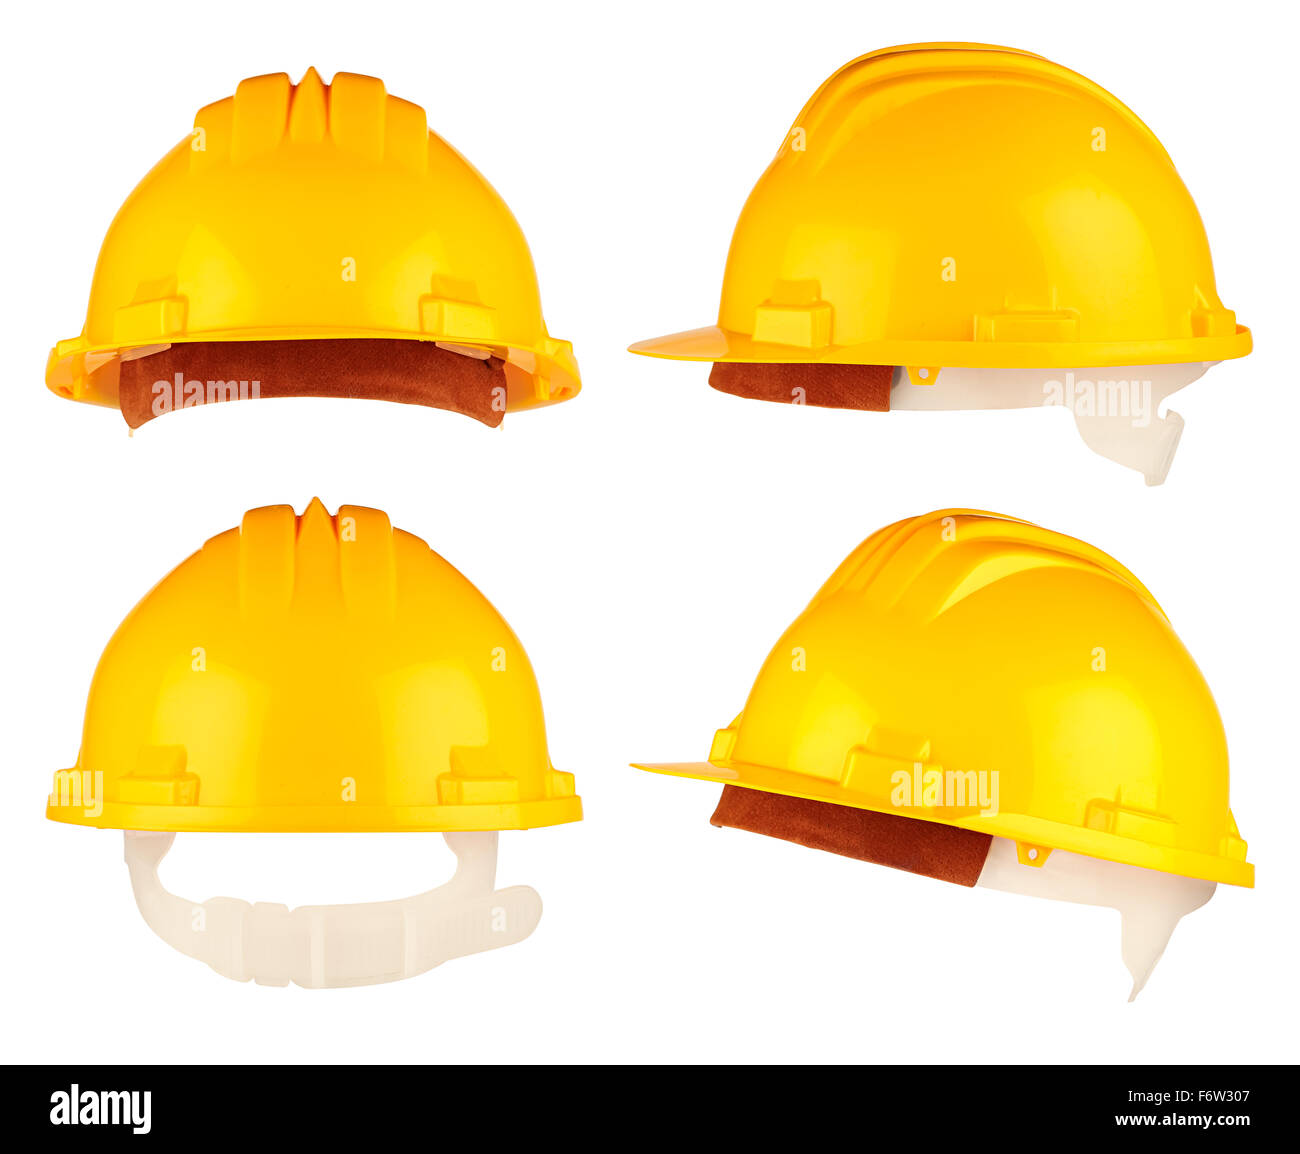 Bâtiment jaune place ensemble casque sur fond blanc Banque D'Images